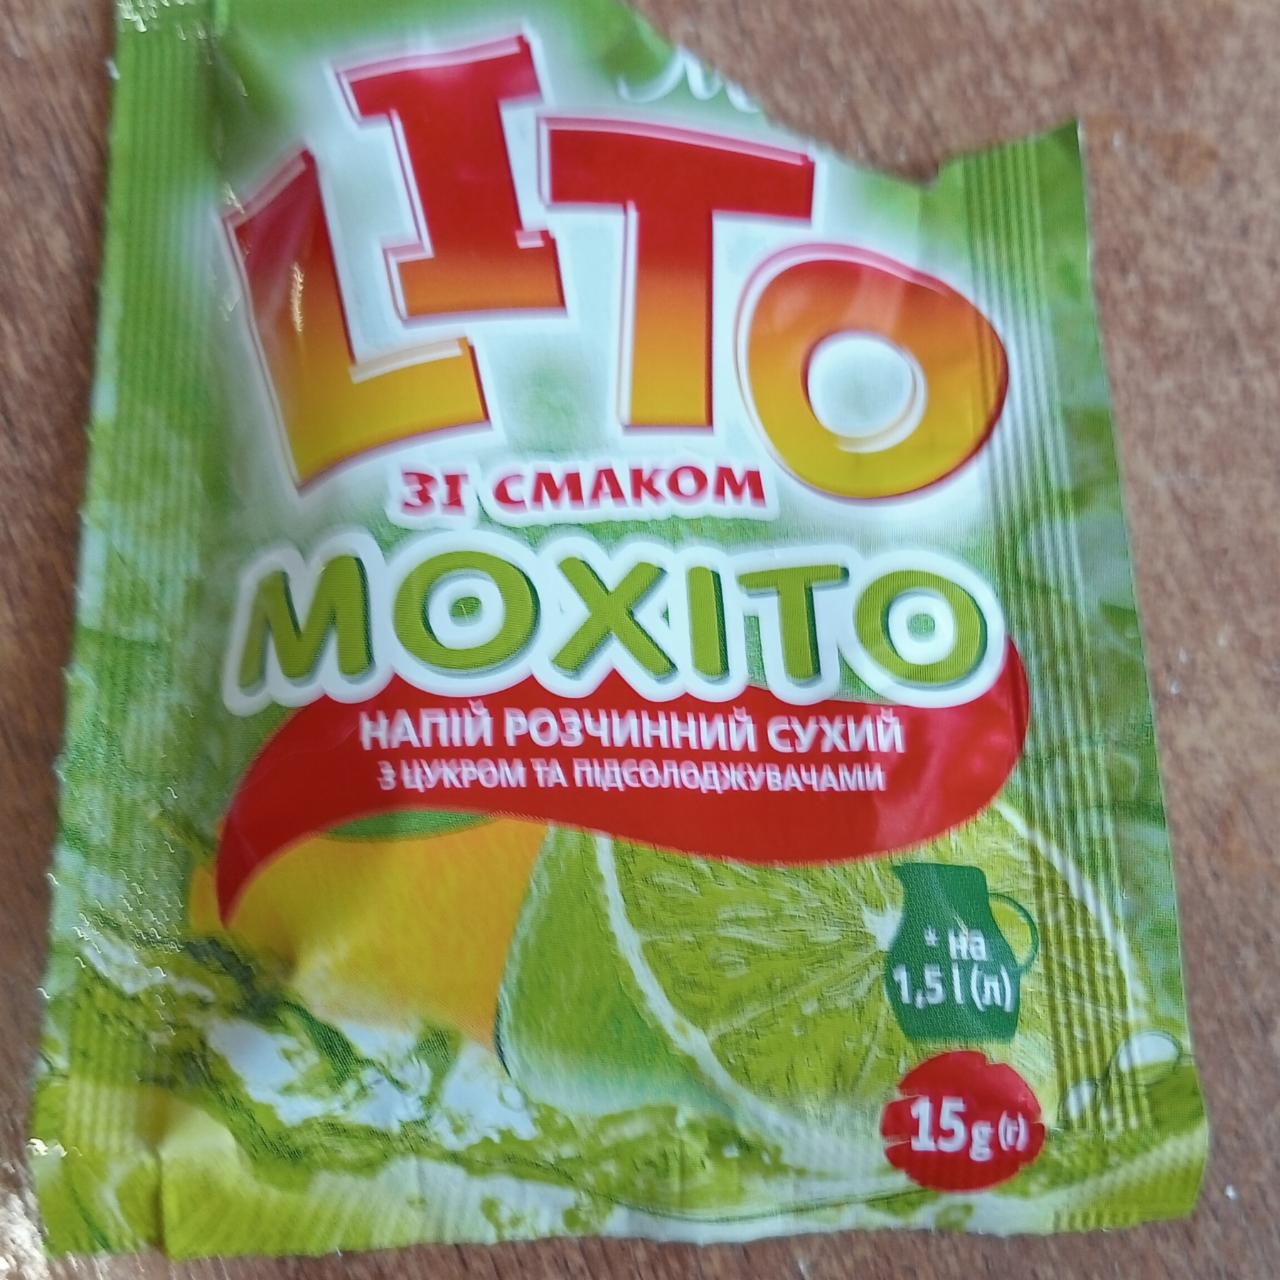 Фото - Напиток растворимый сухой со вкусом Мохито Lito Monik